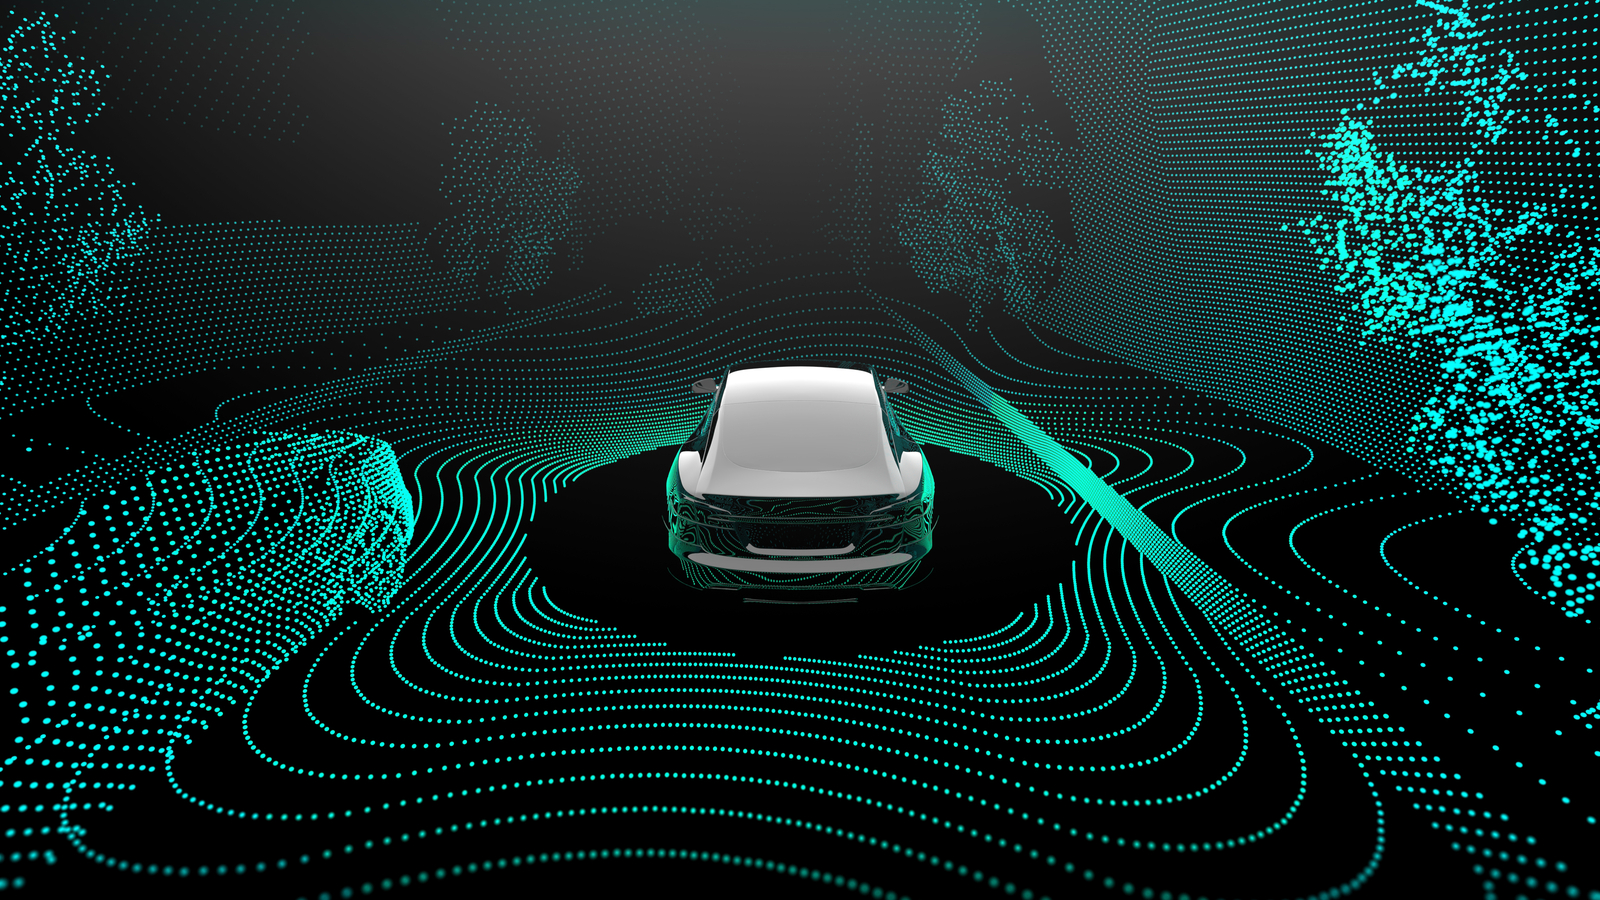 Fiat Chrysler signe un nouveau partenariat visant à développer le segment de la conduite autonome